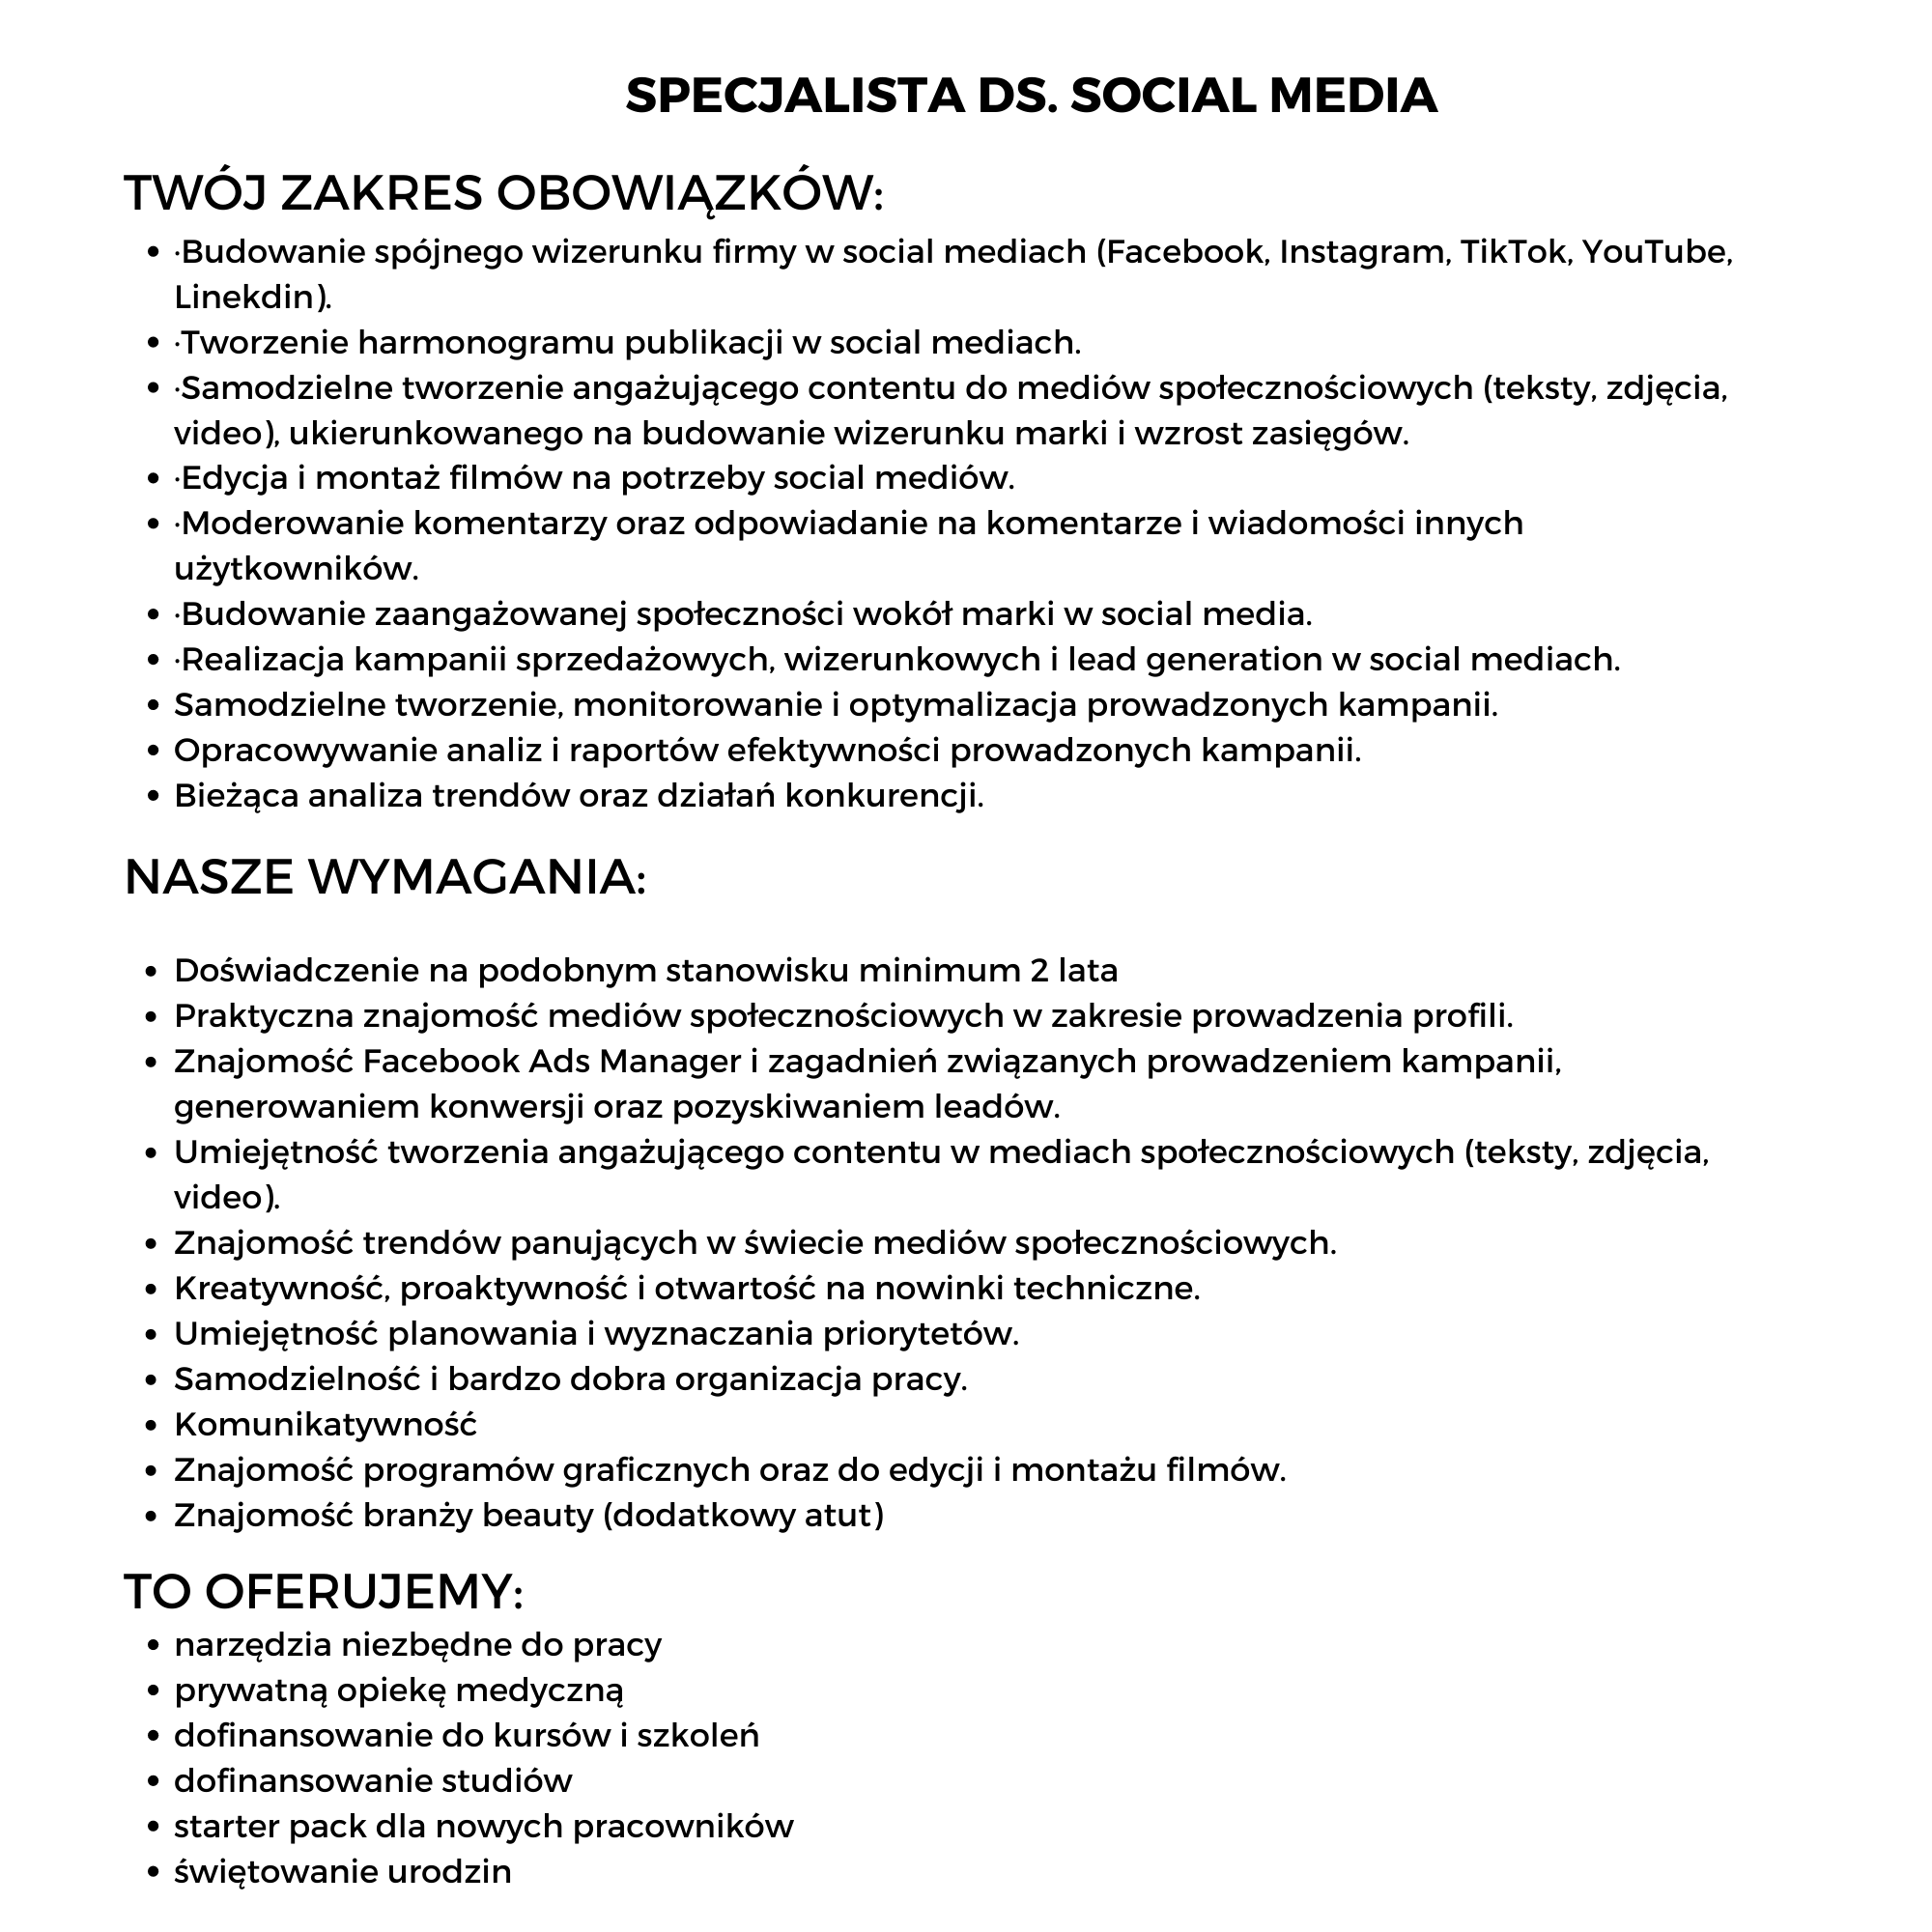 Specjalista DS SOCIAL MEDIA